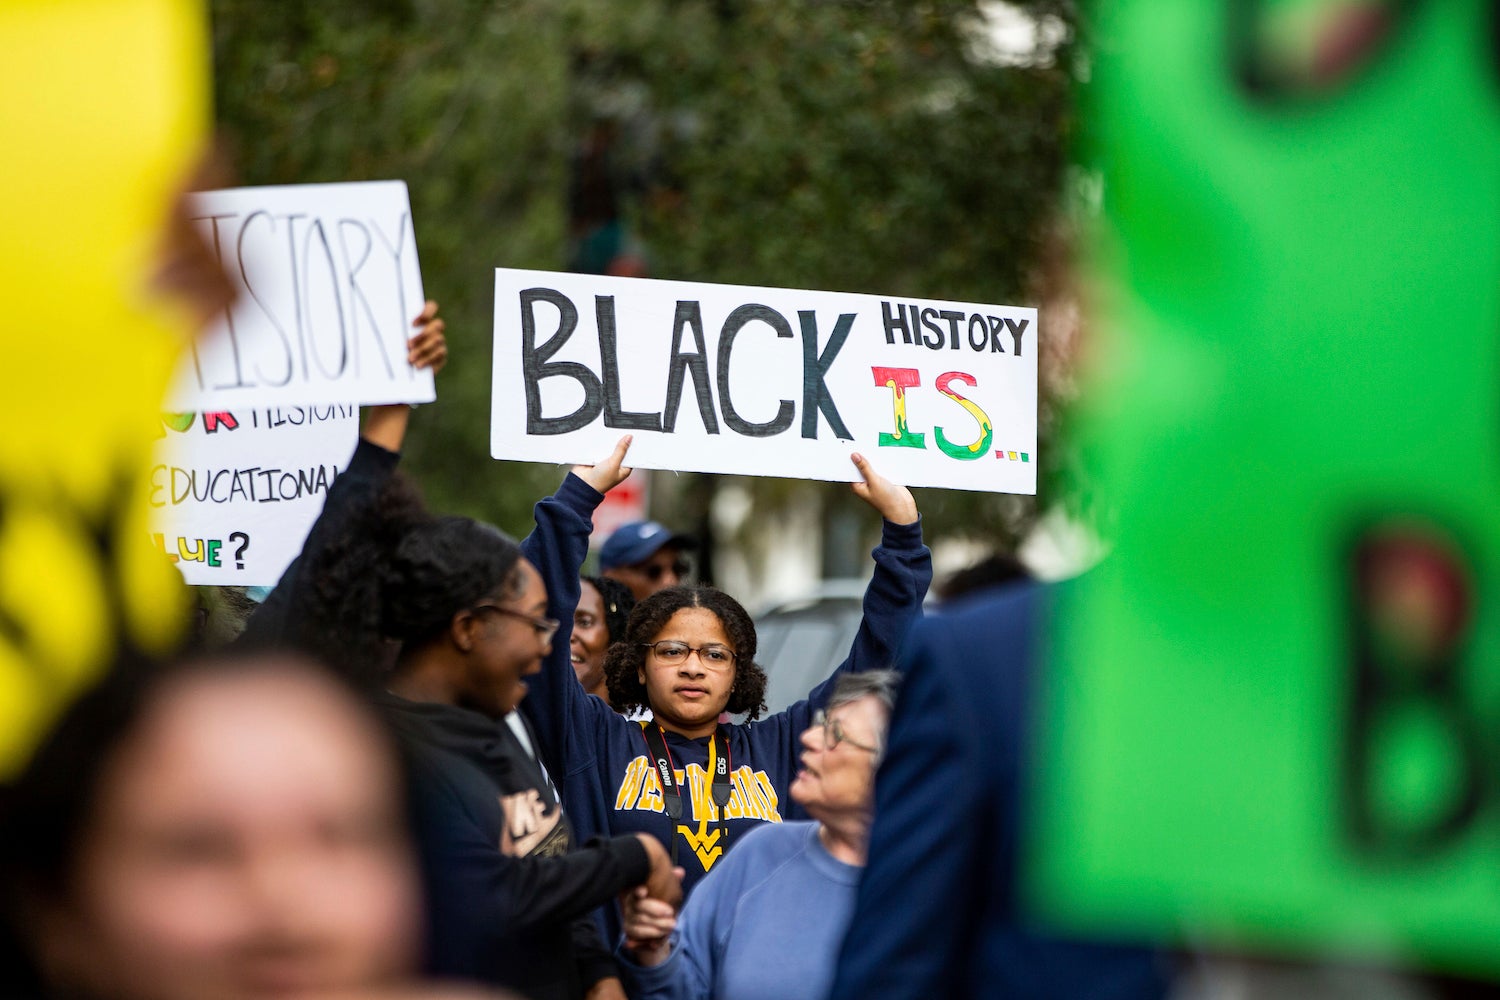 Une jeune femme brandissait une pancarte lors d’une manifestation organisée par le National Action Network à Tallahassee, en Floride, le 15 février 2023, suite au refus du gouverneur Ron DeSantis d’autoriser l’enseignement du cours d’histoire « AP African American Studies » dans les écoles publiques de cet État.